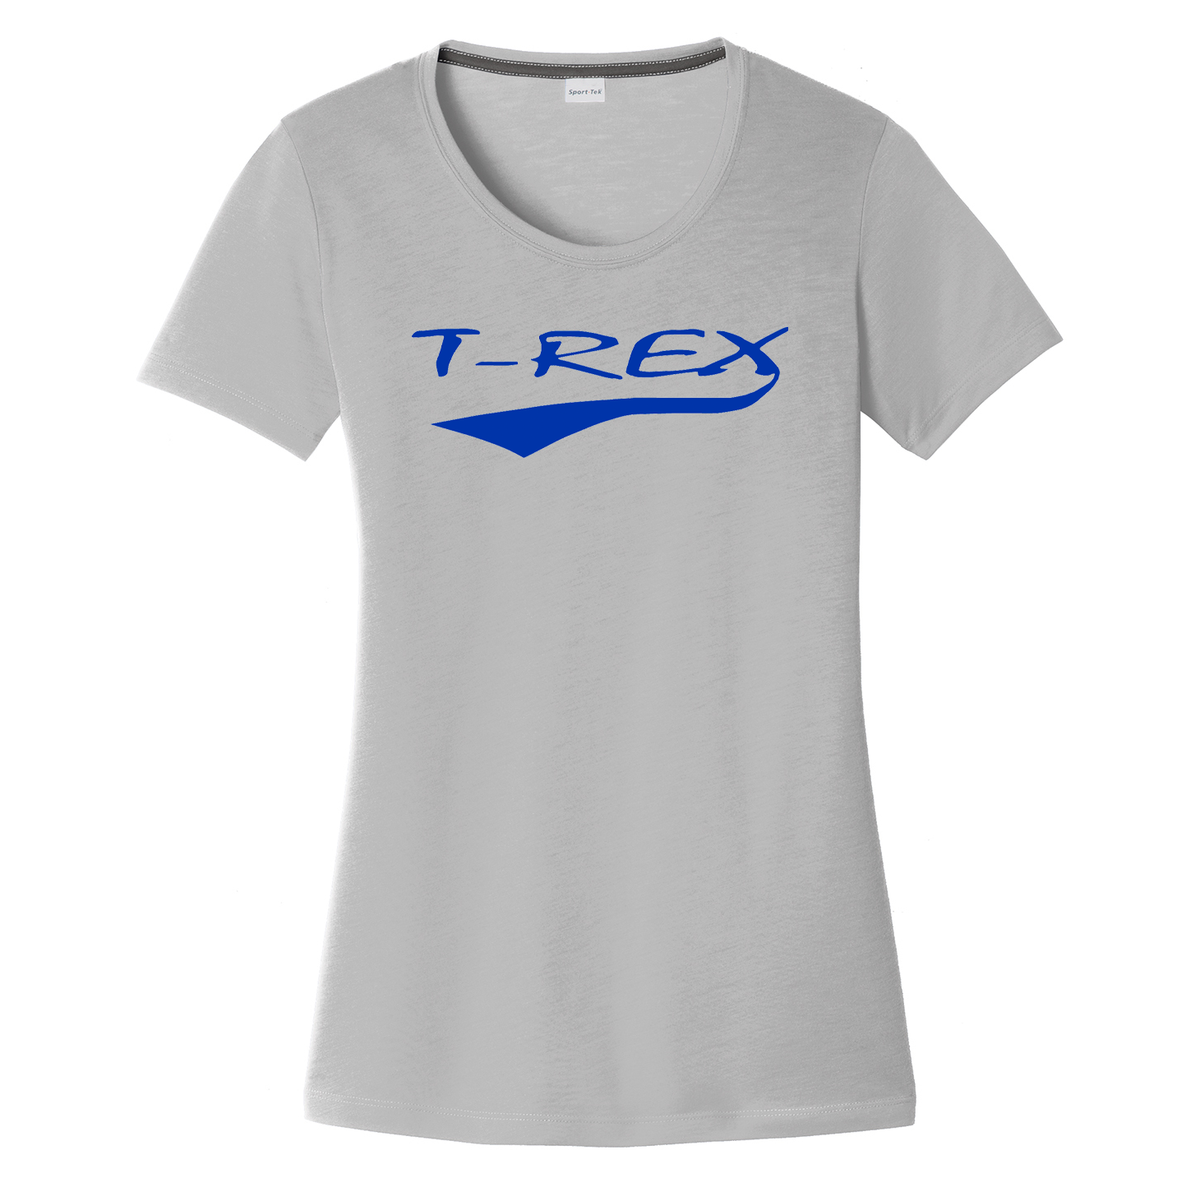 T-Rex Baseball Women's CottonTouch Performance T-Shirt